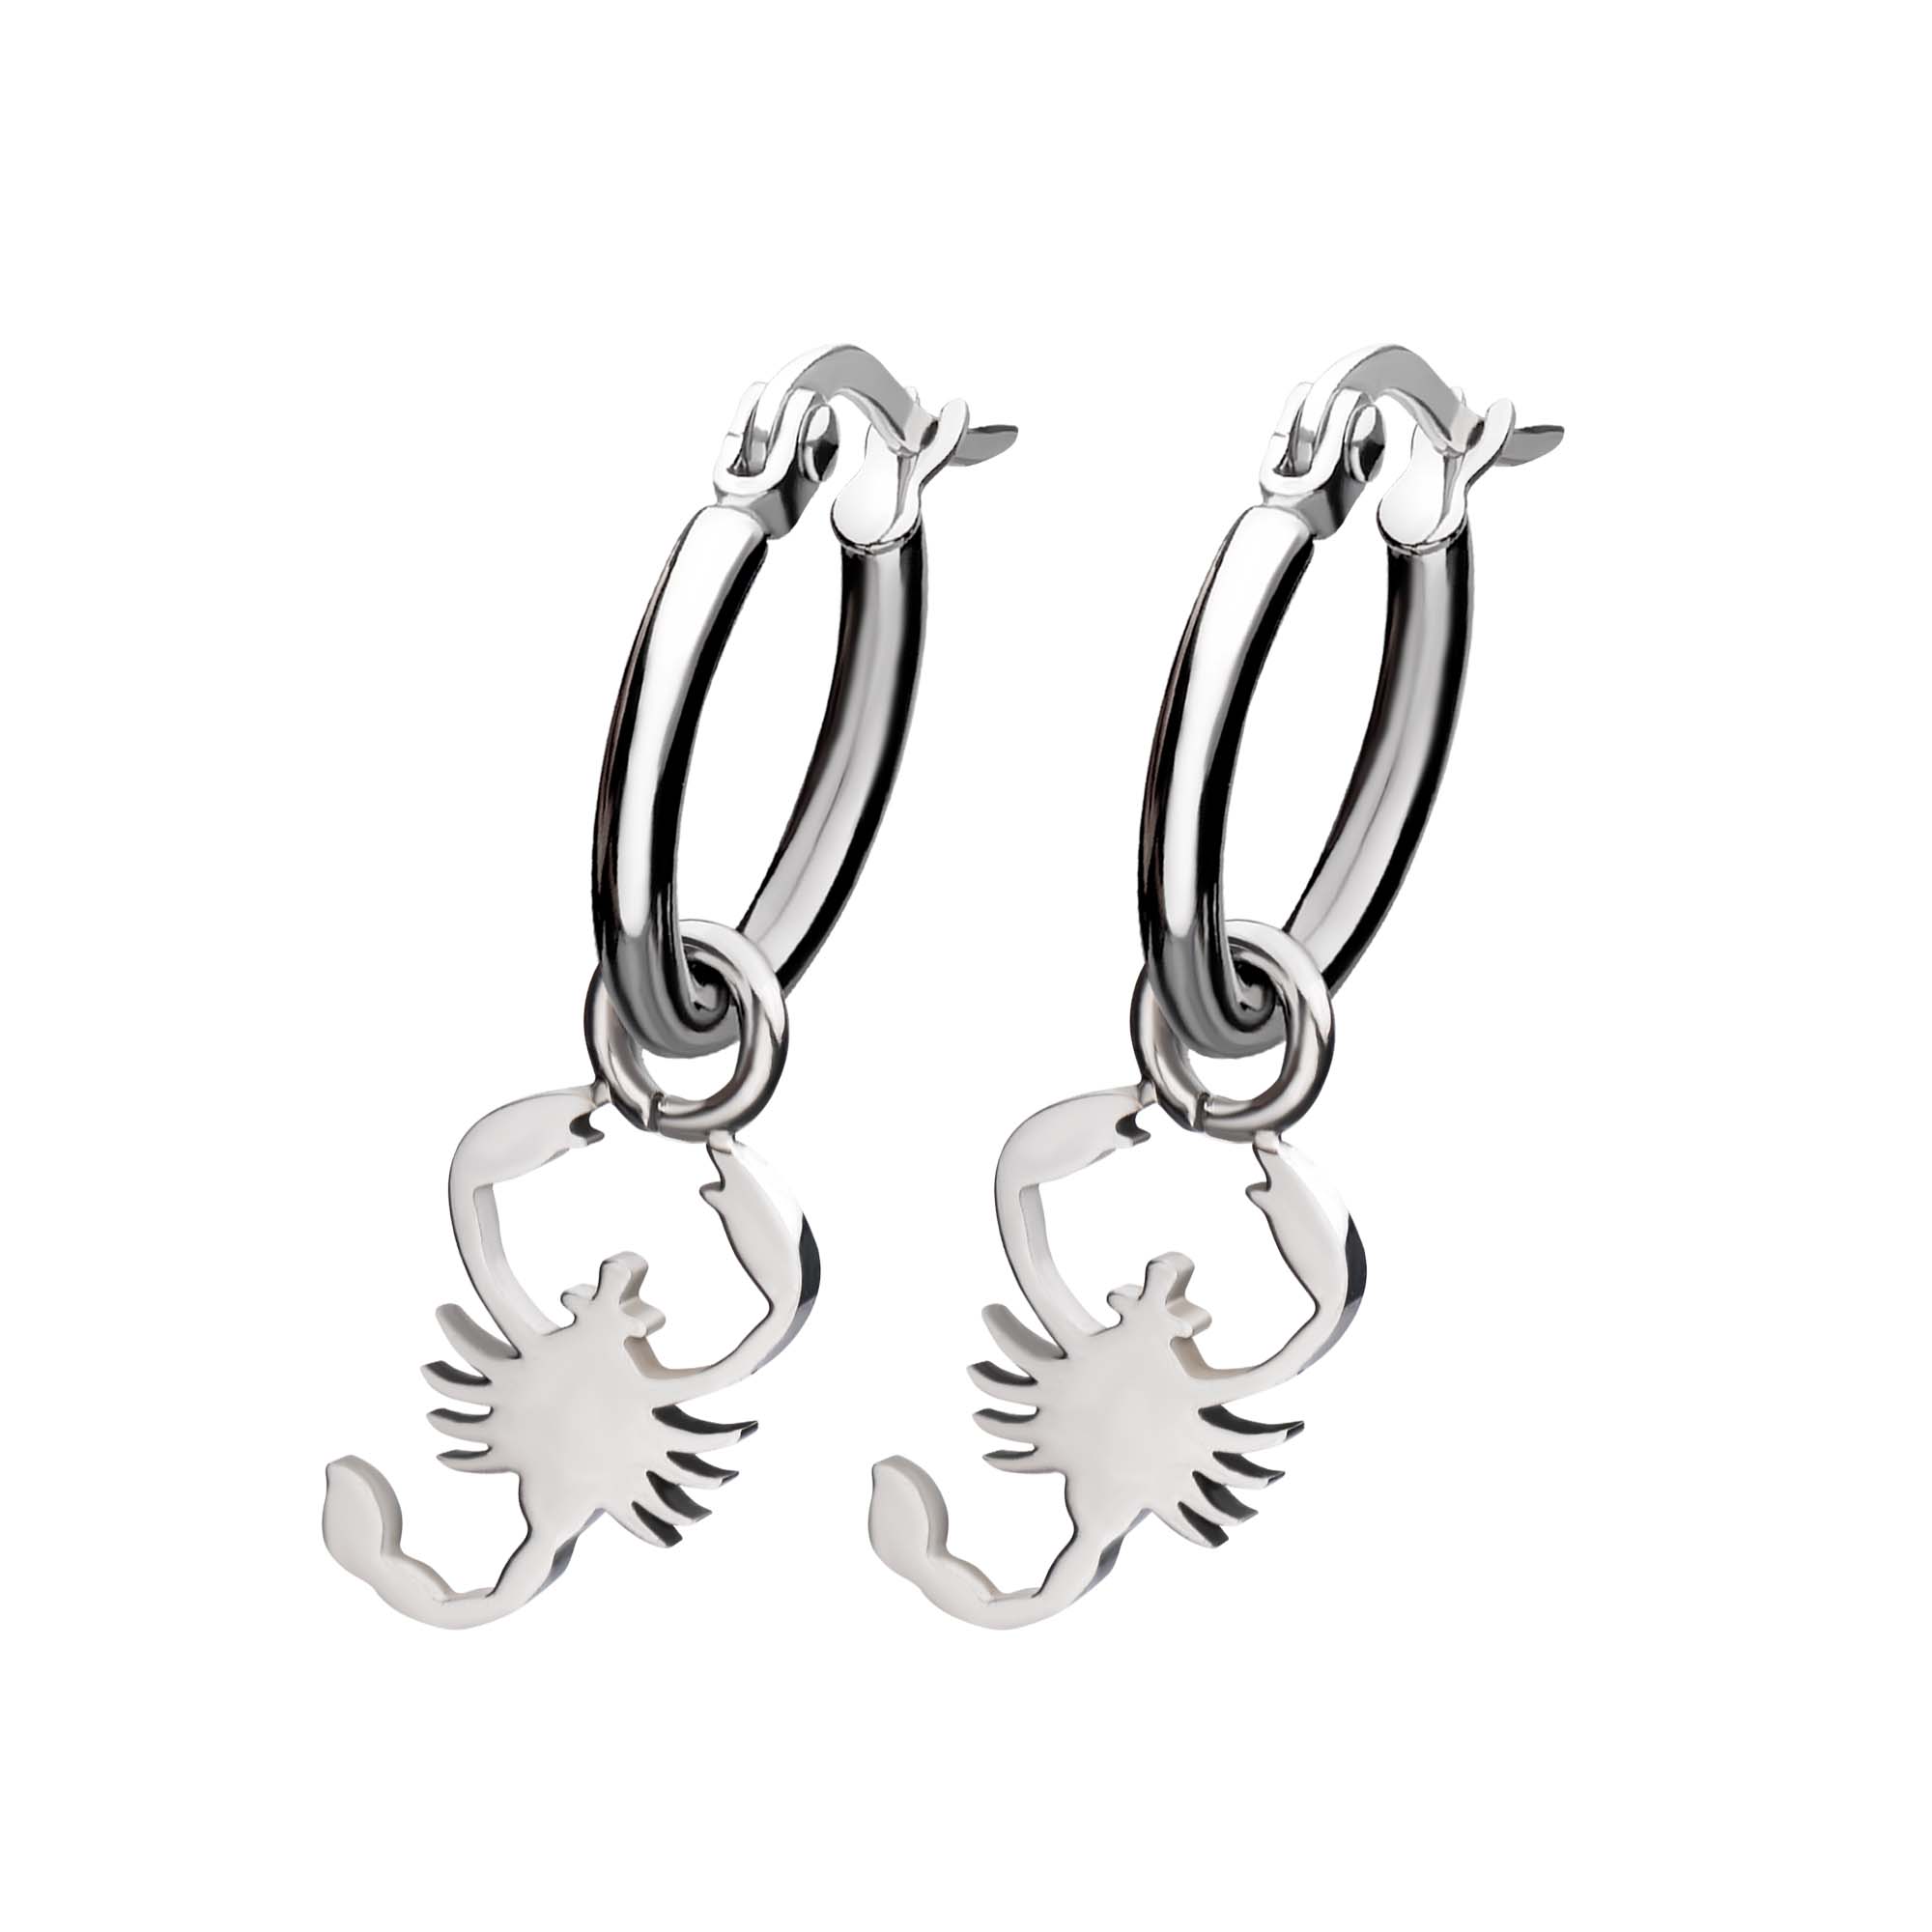 Stainless Steel Hoop Earrings with Scorpio Charm Image 2 Ken Walker Jewelers Gig Harbor, WA